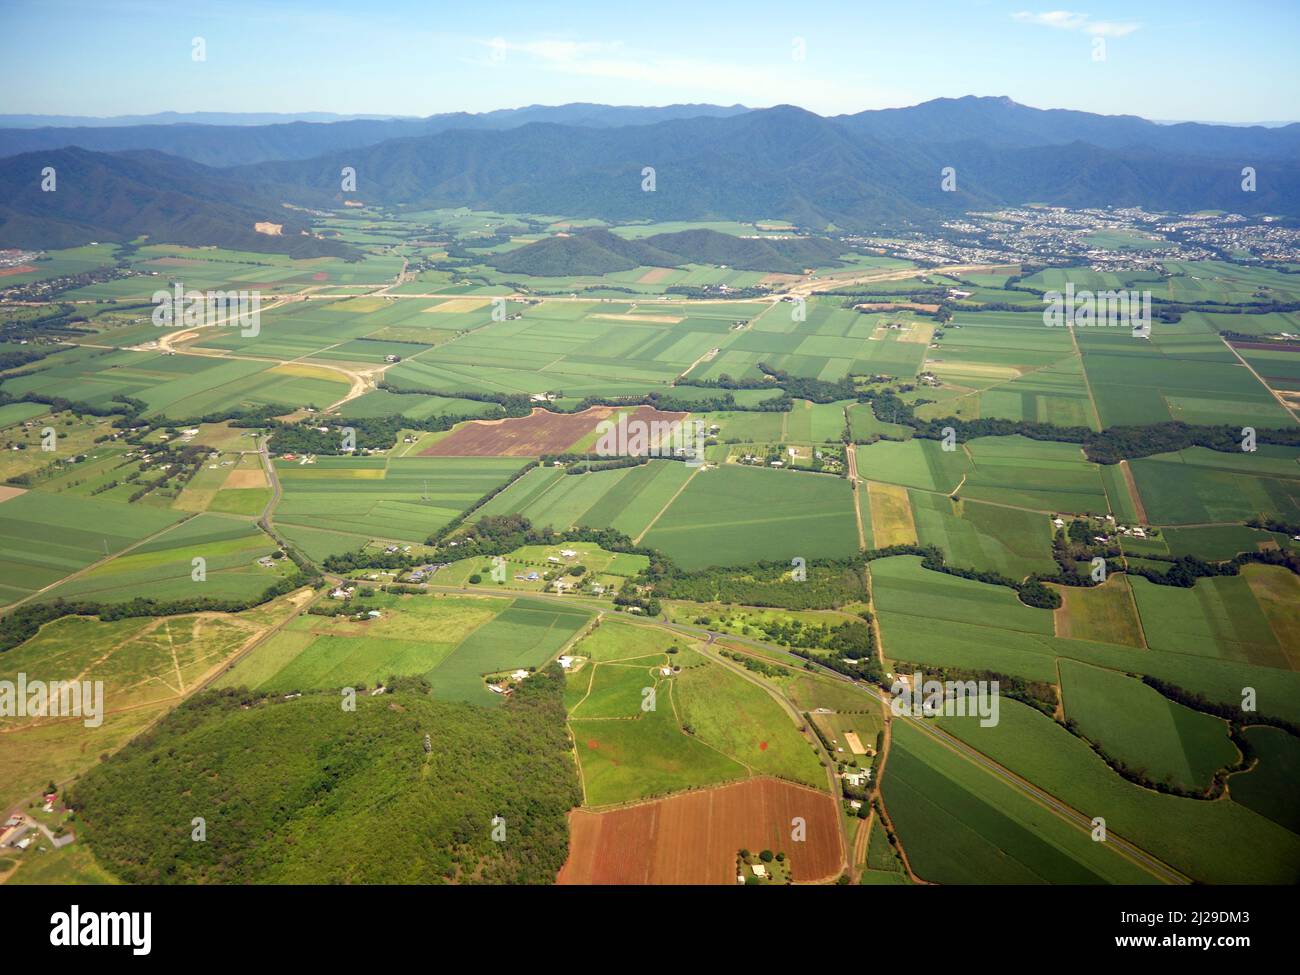 Vista aérea de los usos agrícolas de la tierra al sur de Cairns, Queensland, Australia Foto de stock